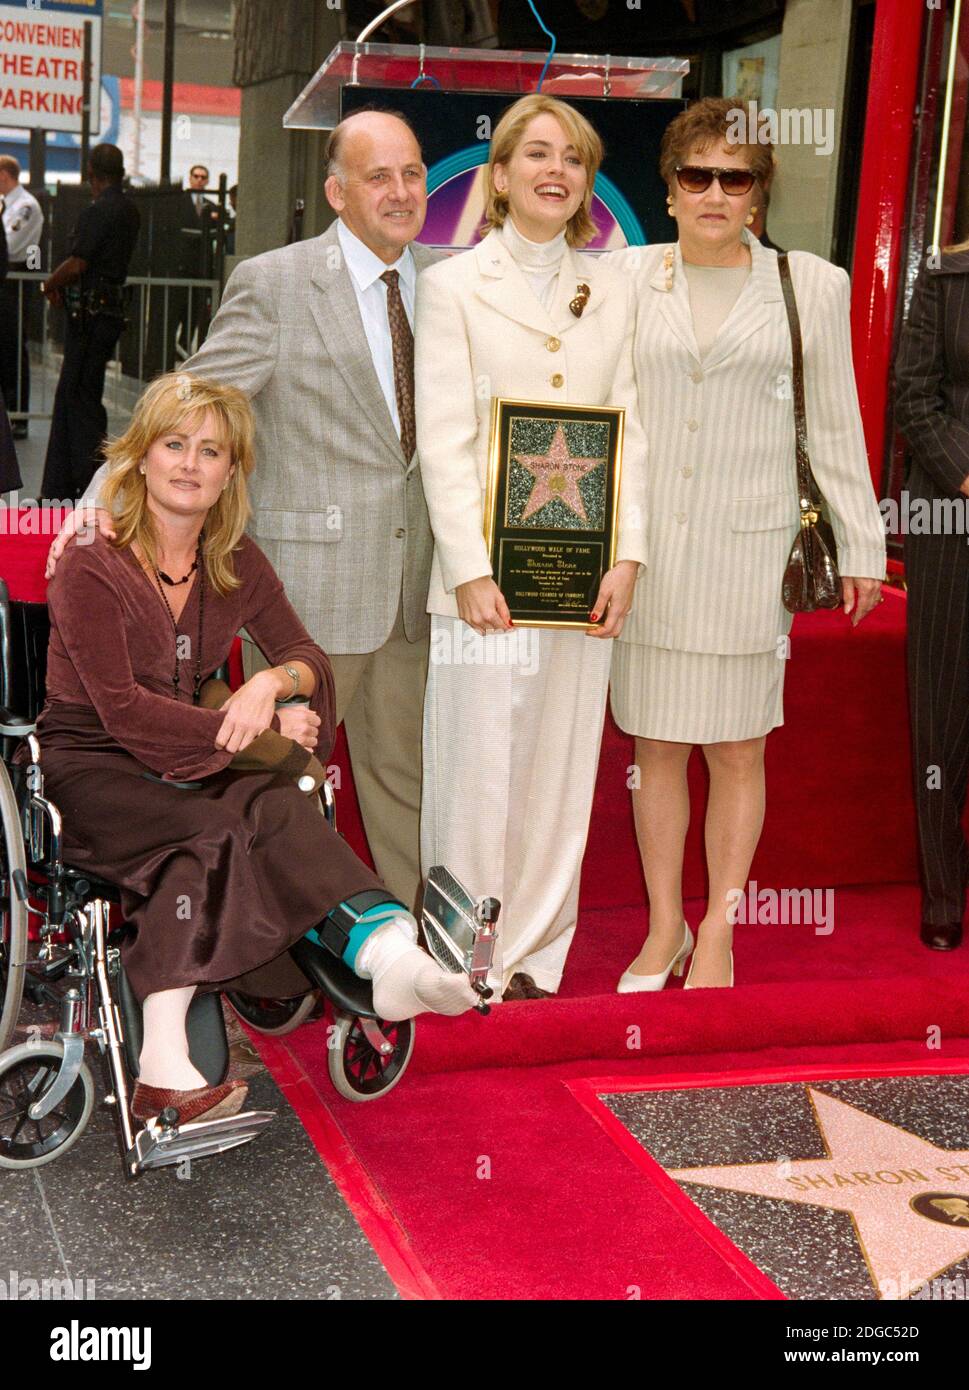 ARCHIVIO: LOS ANGELES, CA. 16 novembre 1995: L'attrice Sharon Stone con i suoi genitori e la sorella Kelly Stone è onorata con una stella sulla Hollywood Walk of Fame a Los Angeles. Foto del file © Paul Smith/Caratteristiche Foto Stock